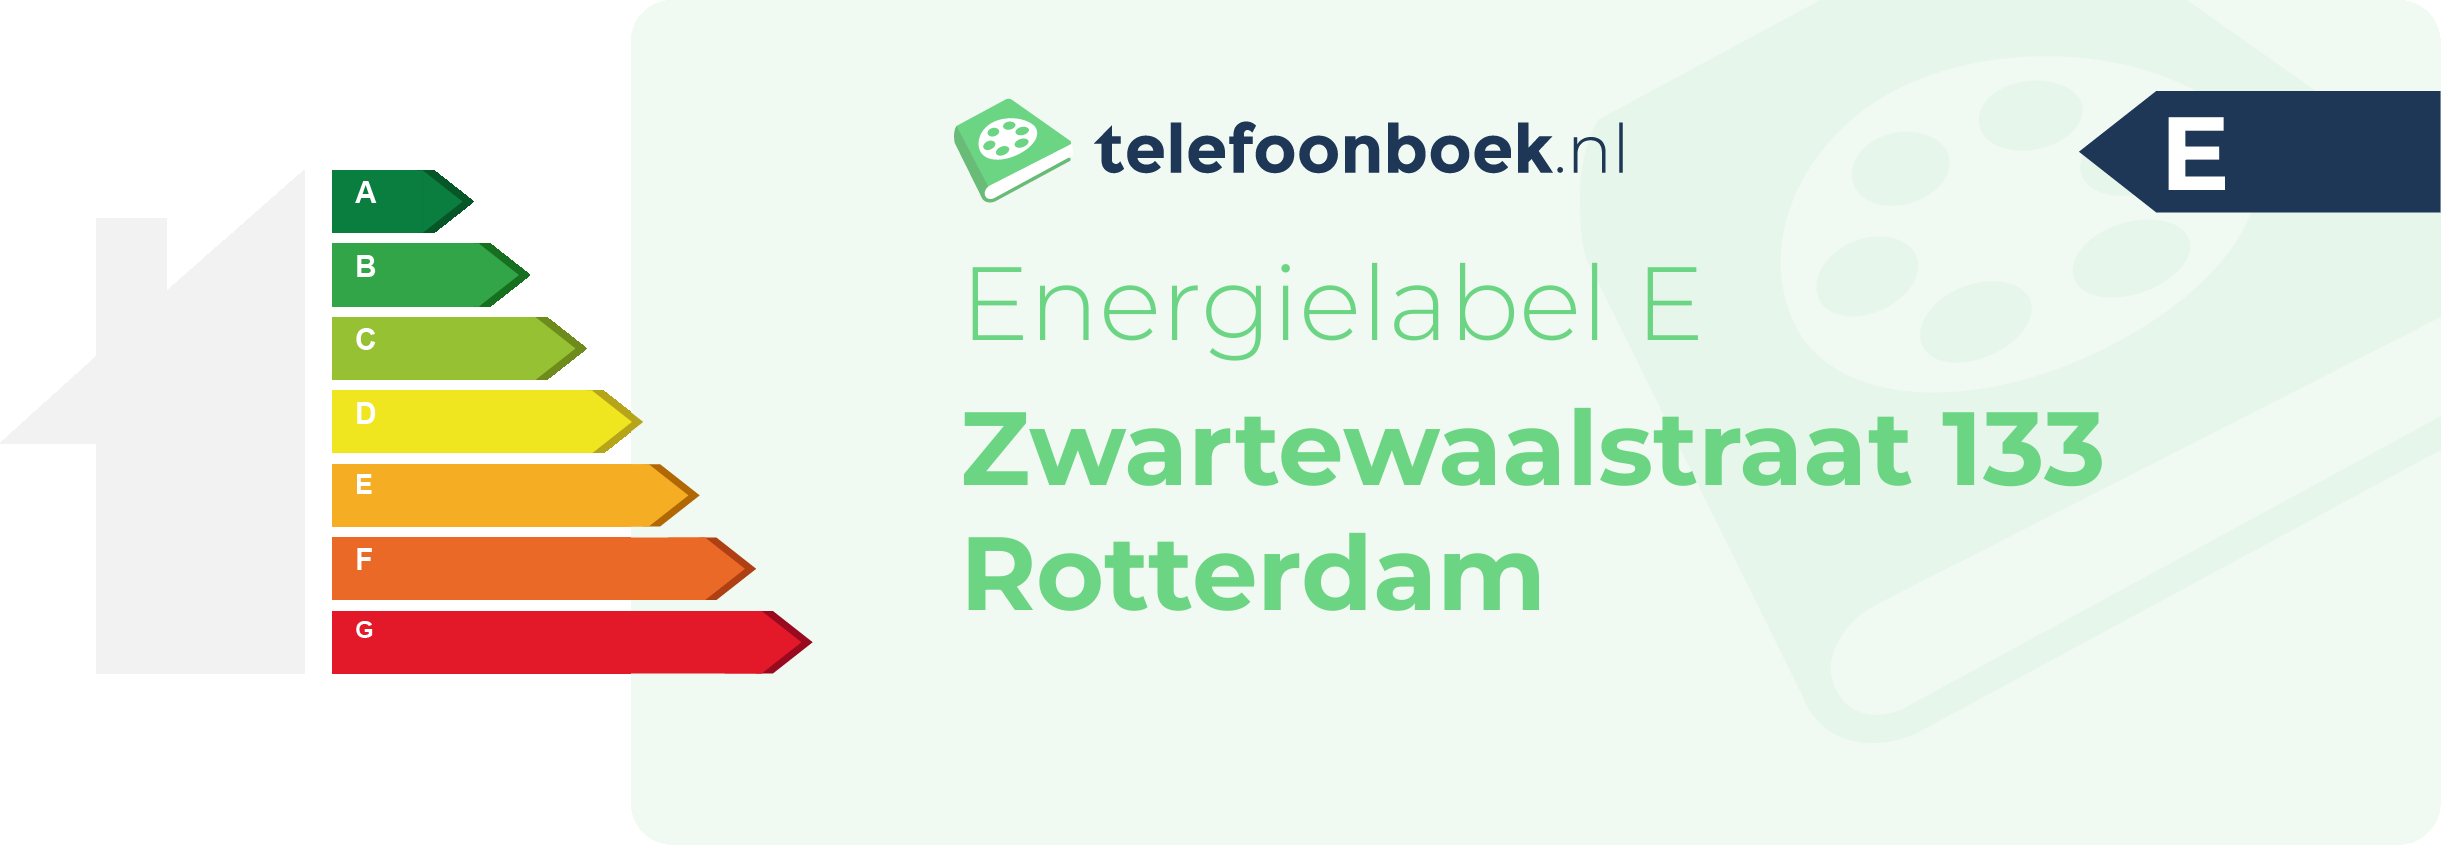 Energielabel Zwartewaalstraat 133 Rotterdam